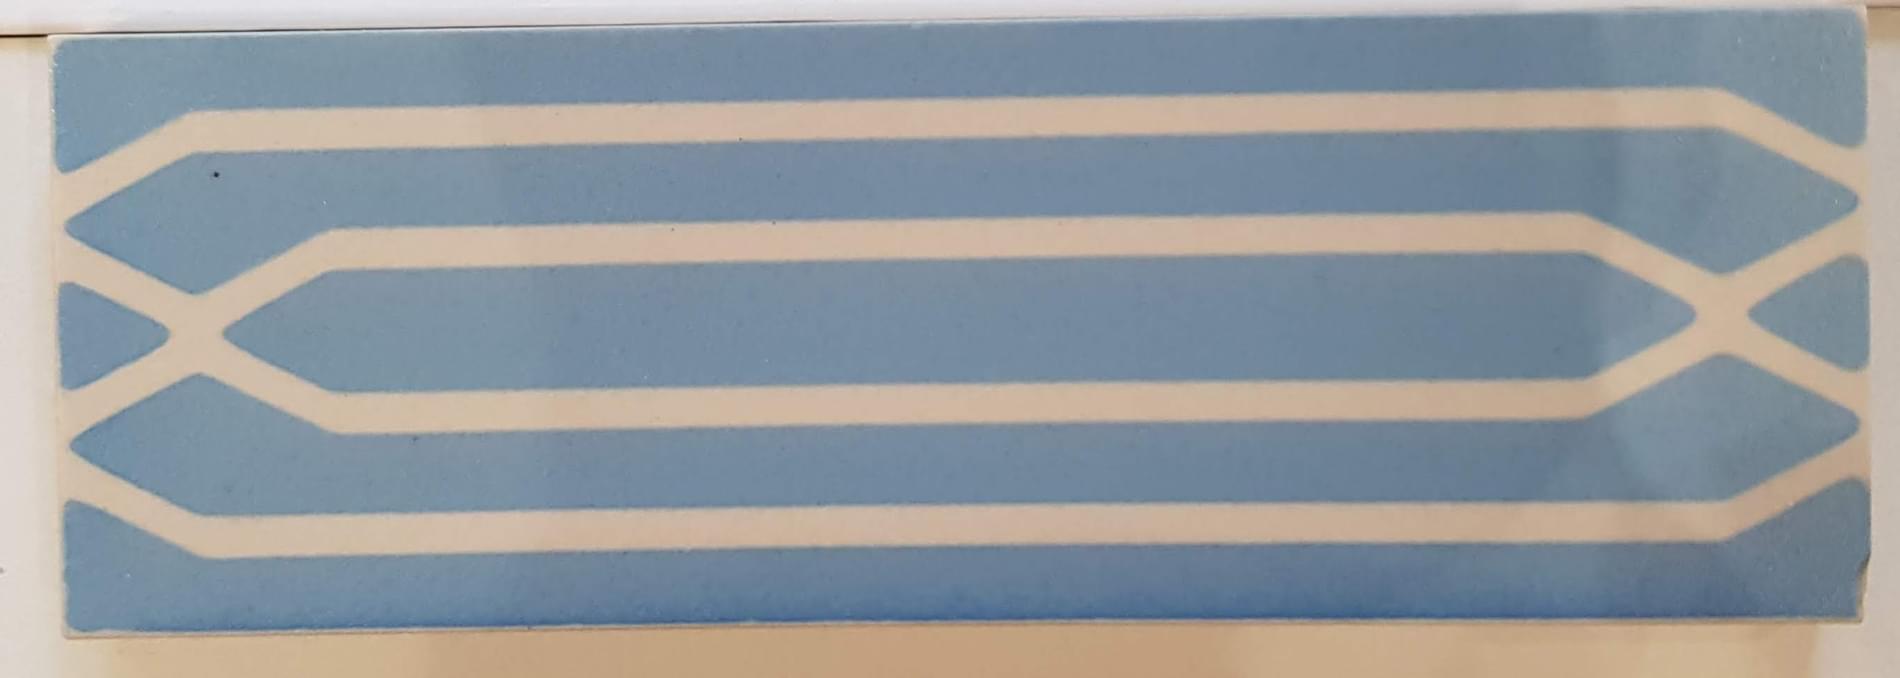 Winckelmans Simple Colors Decors Encaustic Enc37 White Light Blue 5x15